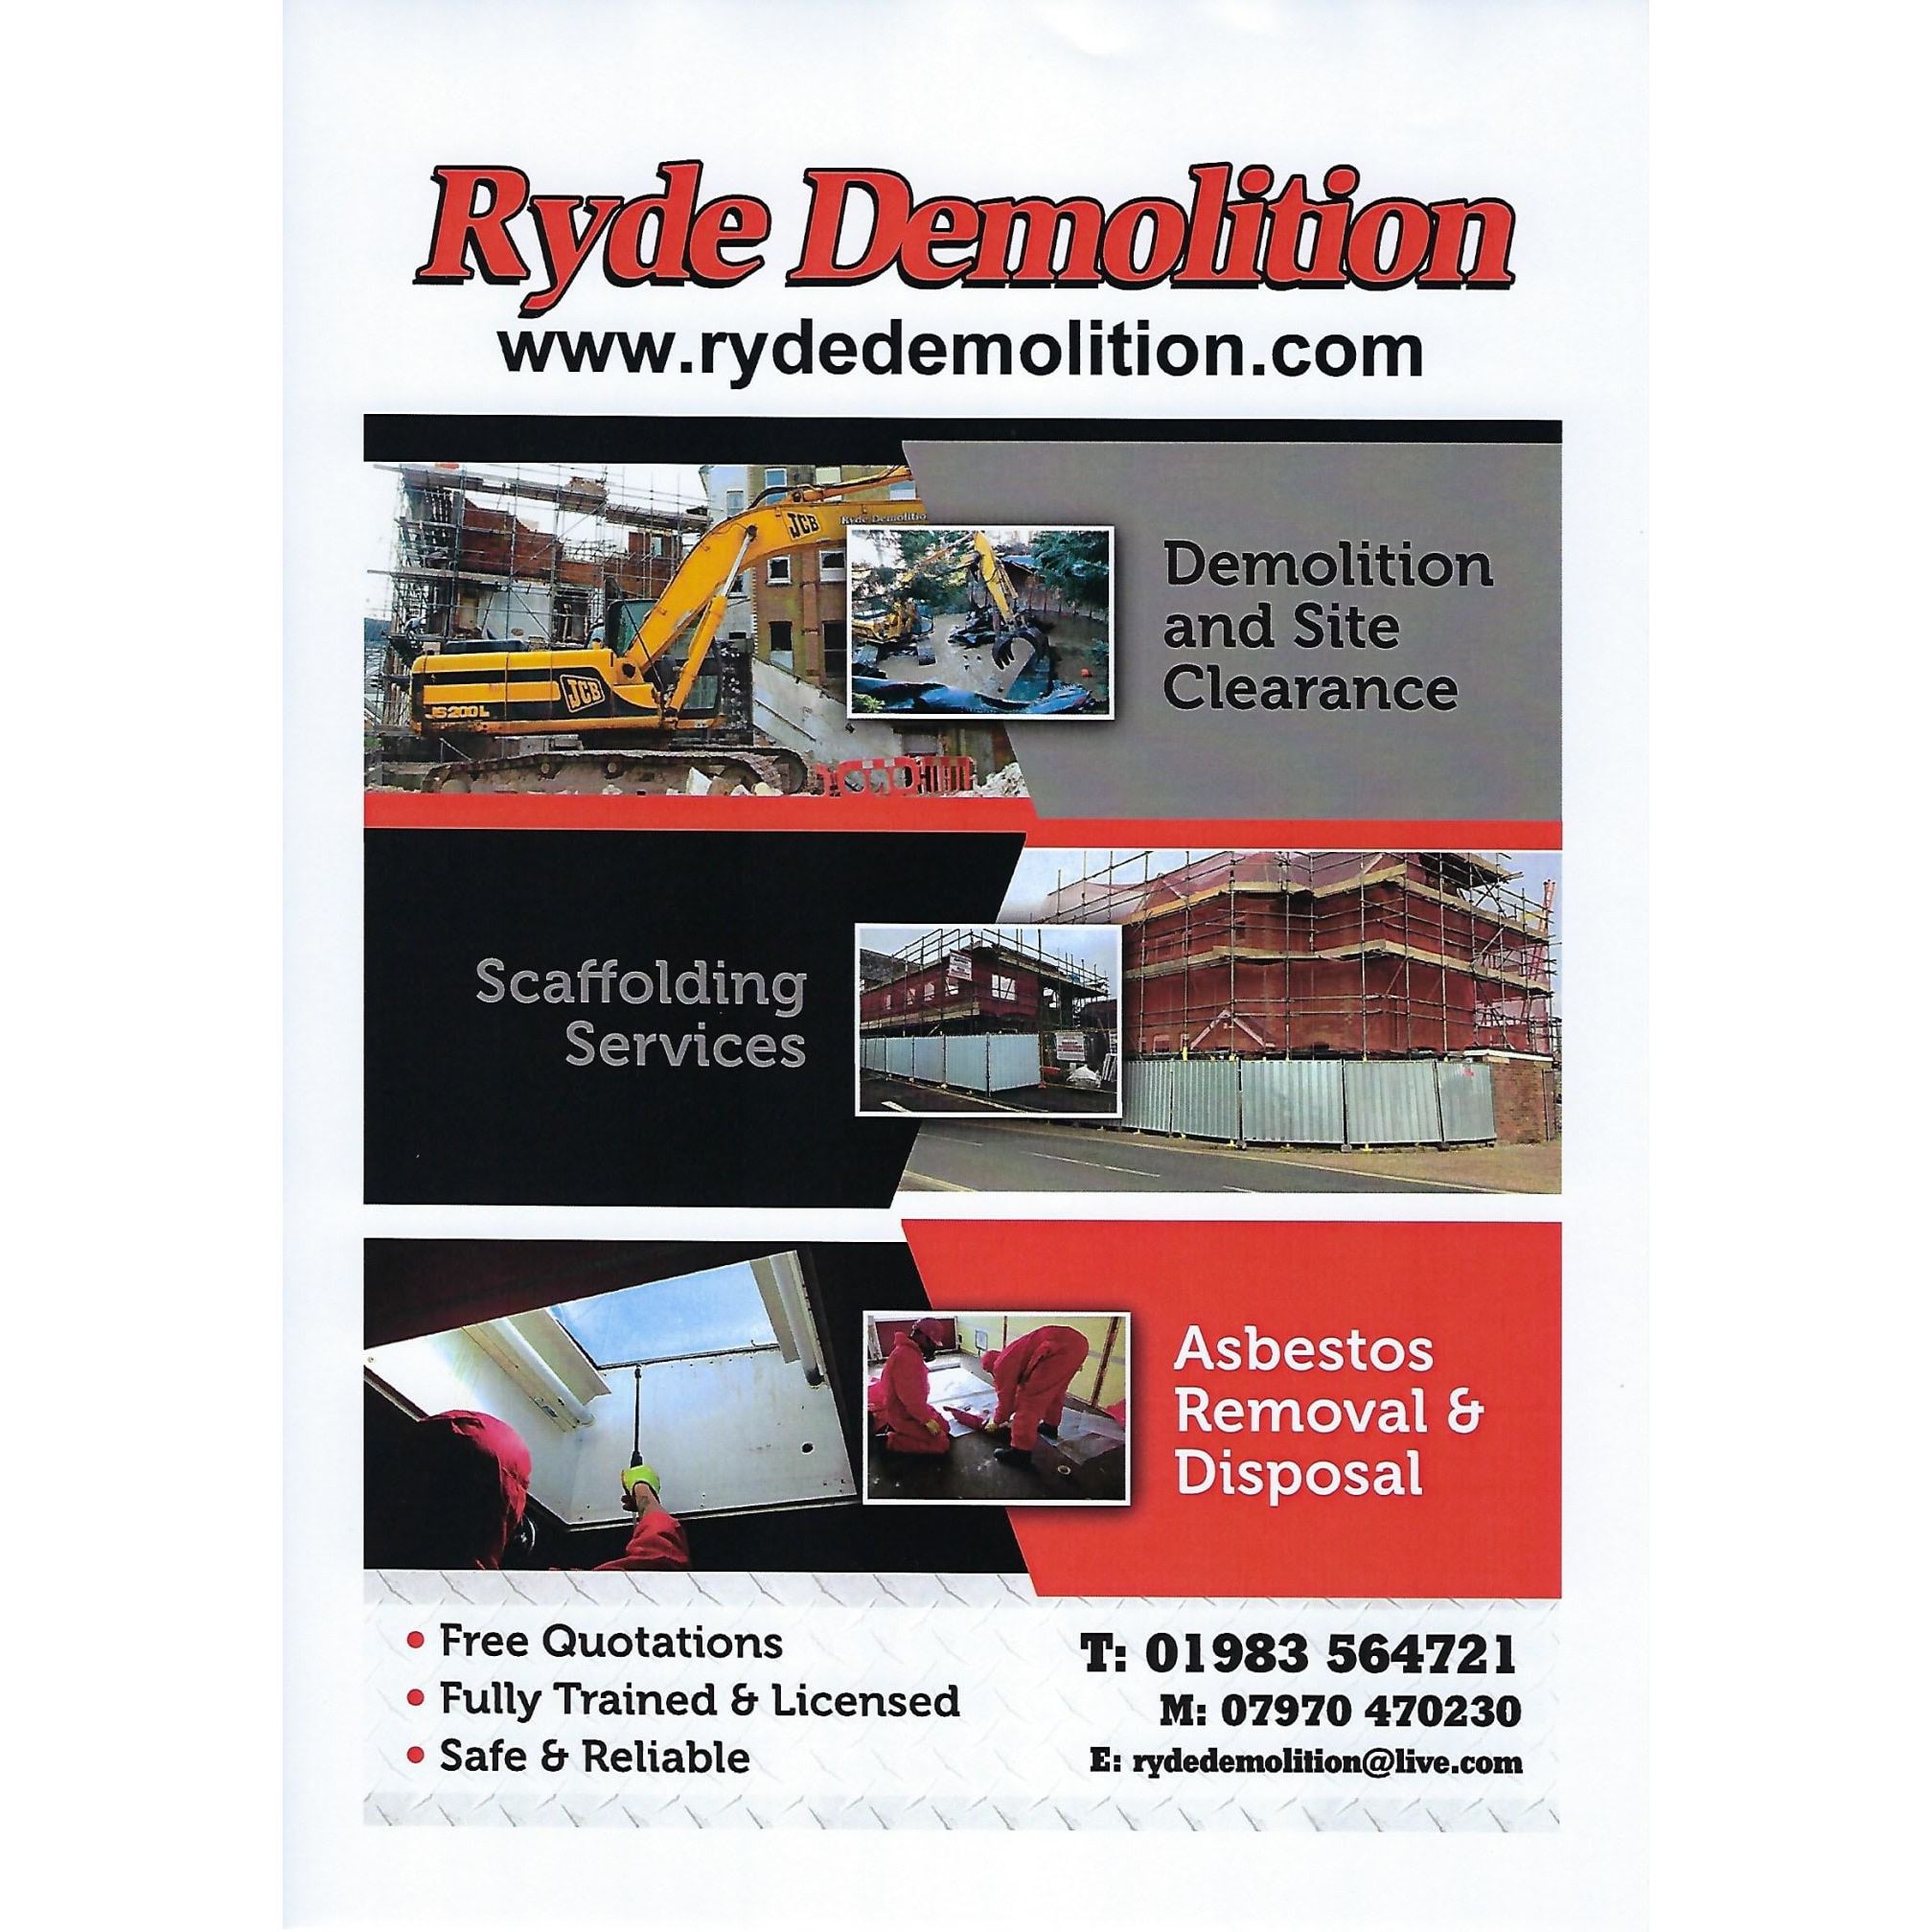 LOGO Ryde Demolition Ryde 01983 564721